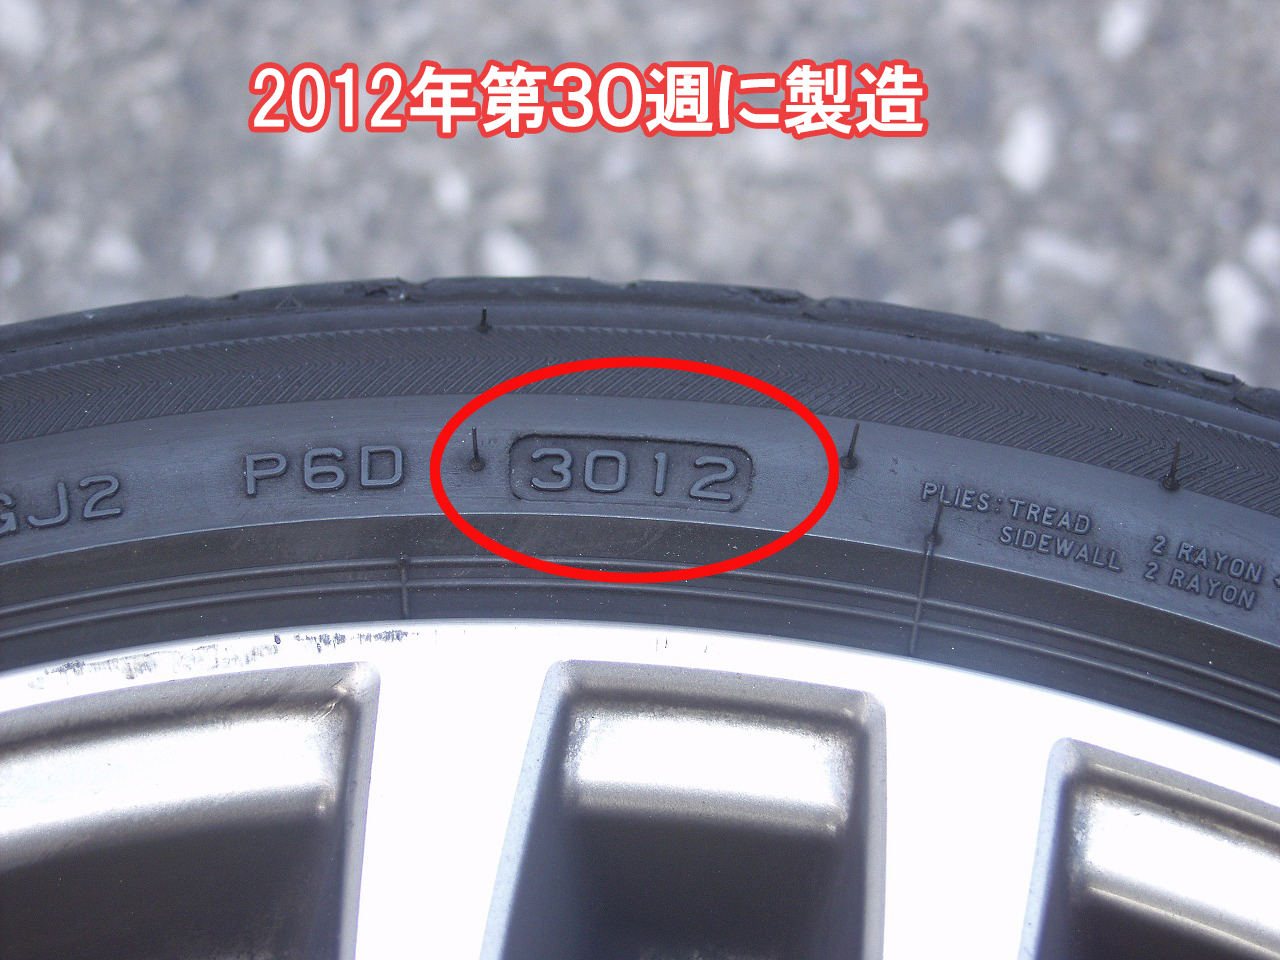 このタイヤが2012年の第30週に製造されたことを示しています。